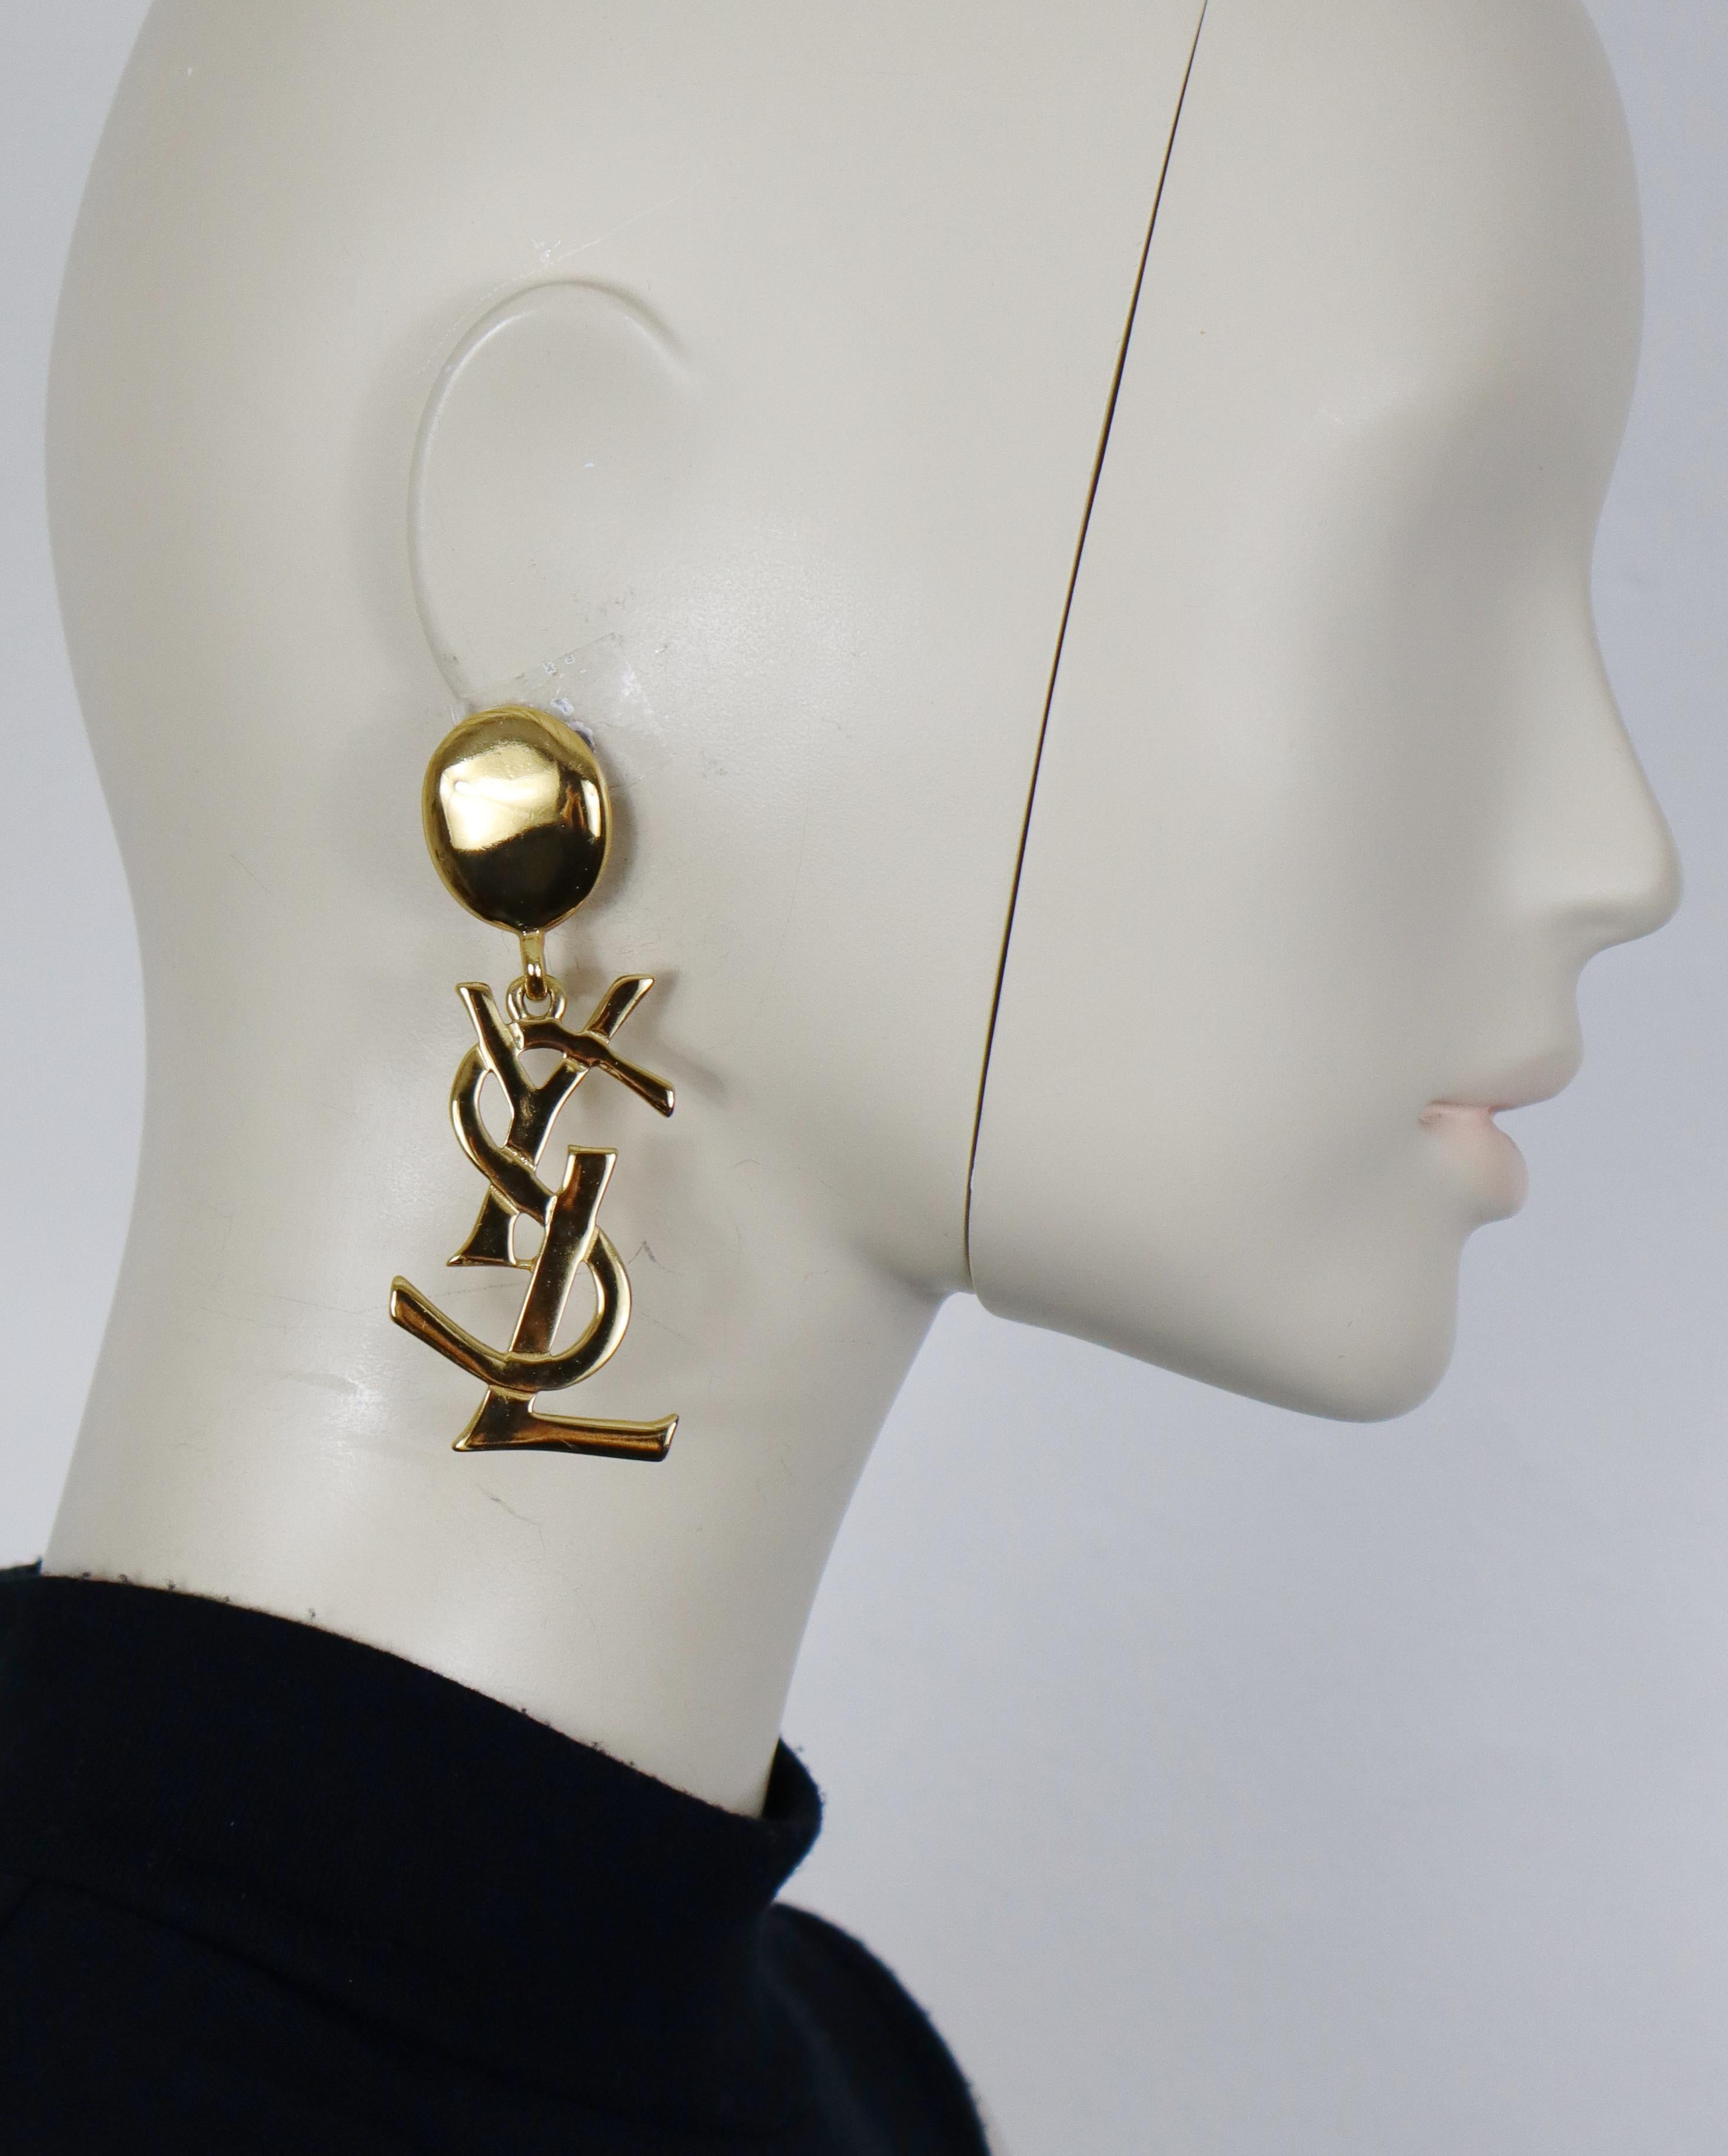 YVES SAINT LAURENT orecchini pendenti vintage in oro massiccio (a clip) con logo YSL.

YSL Made in France in rilievo.

Misure indicative: altezza circa 8,3 cm (circa 3,27 pollici) / larghezza massima circa 2,7 cm (1,06 pollici).

Peso per orecchino: